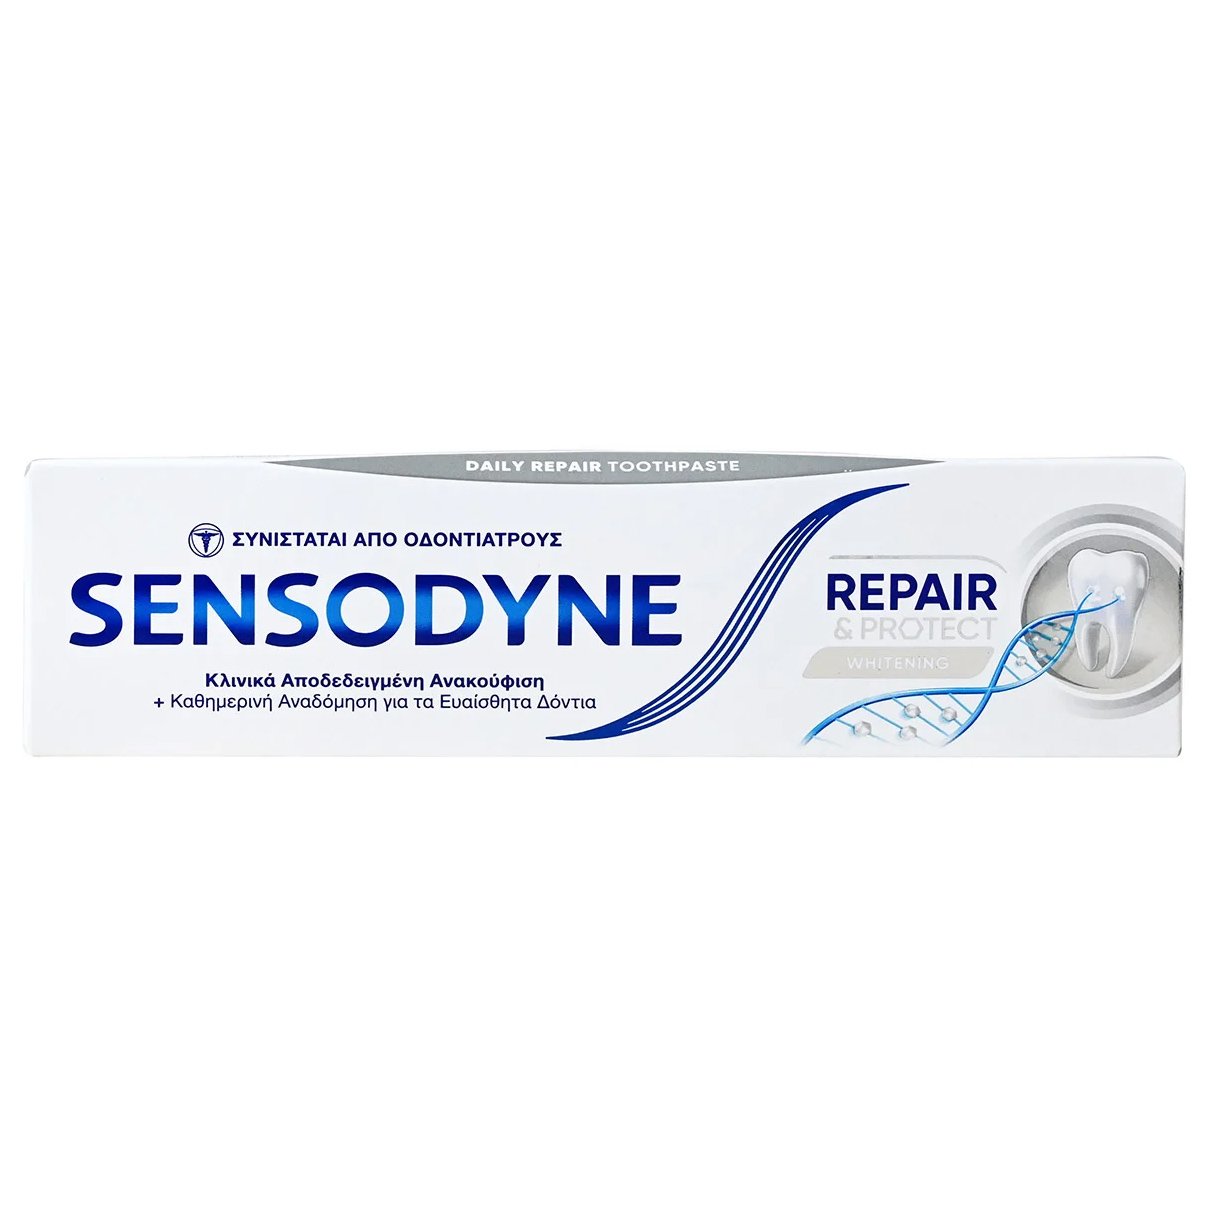 Sensodyne Repair & Protect Whitening Οδοντόκρεμα Καθημερινής Χρήσης που Αναδομεί – Ενδυναμώνει – Προστατεύει τα Δόντια 75ml